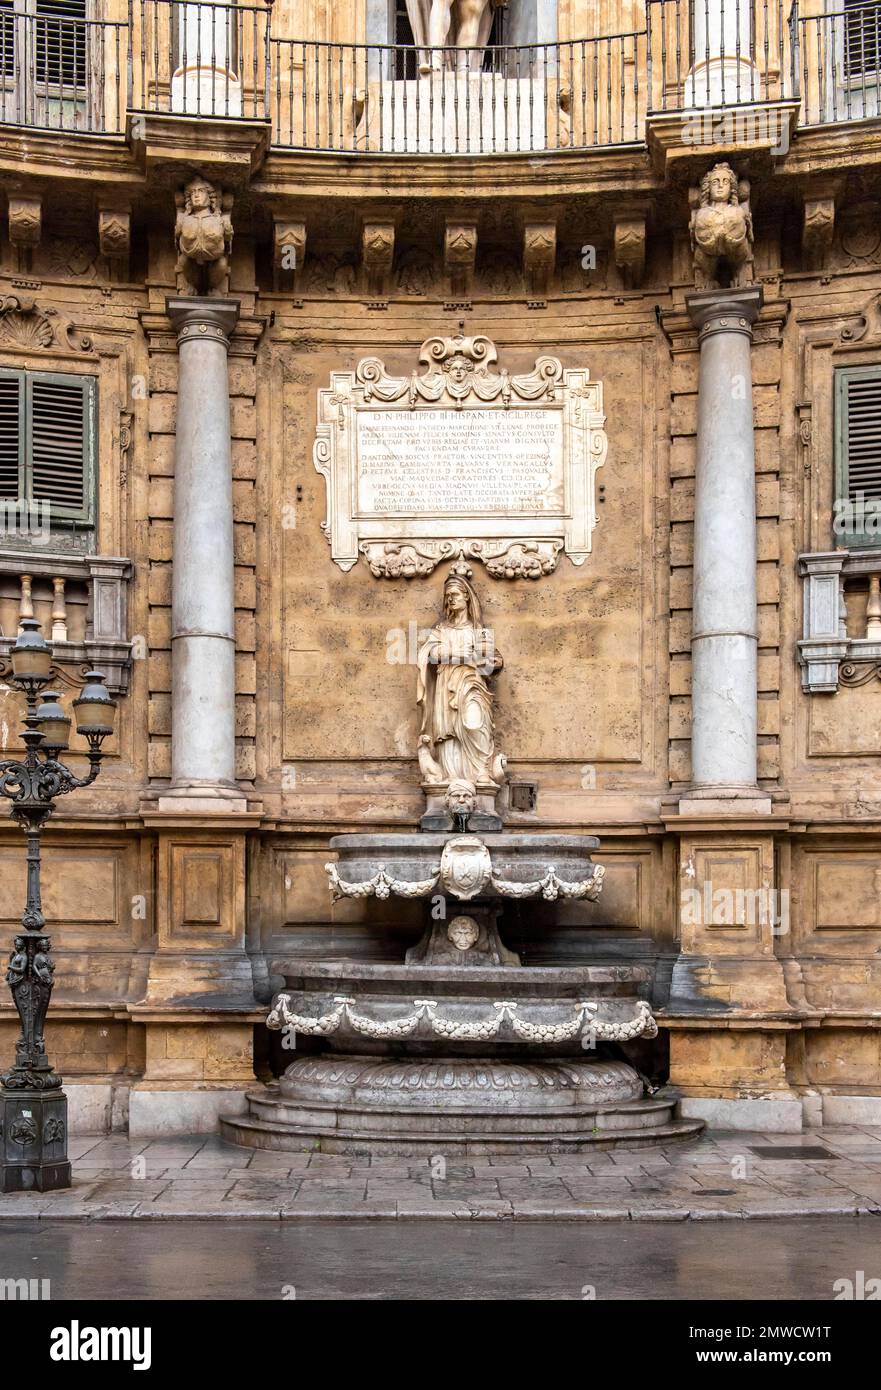 Fountain representing winter season at Quattro Canti, Palermo, Sicily, Italy Stock Photo